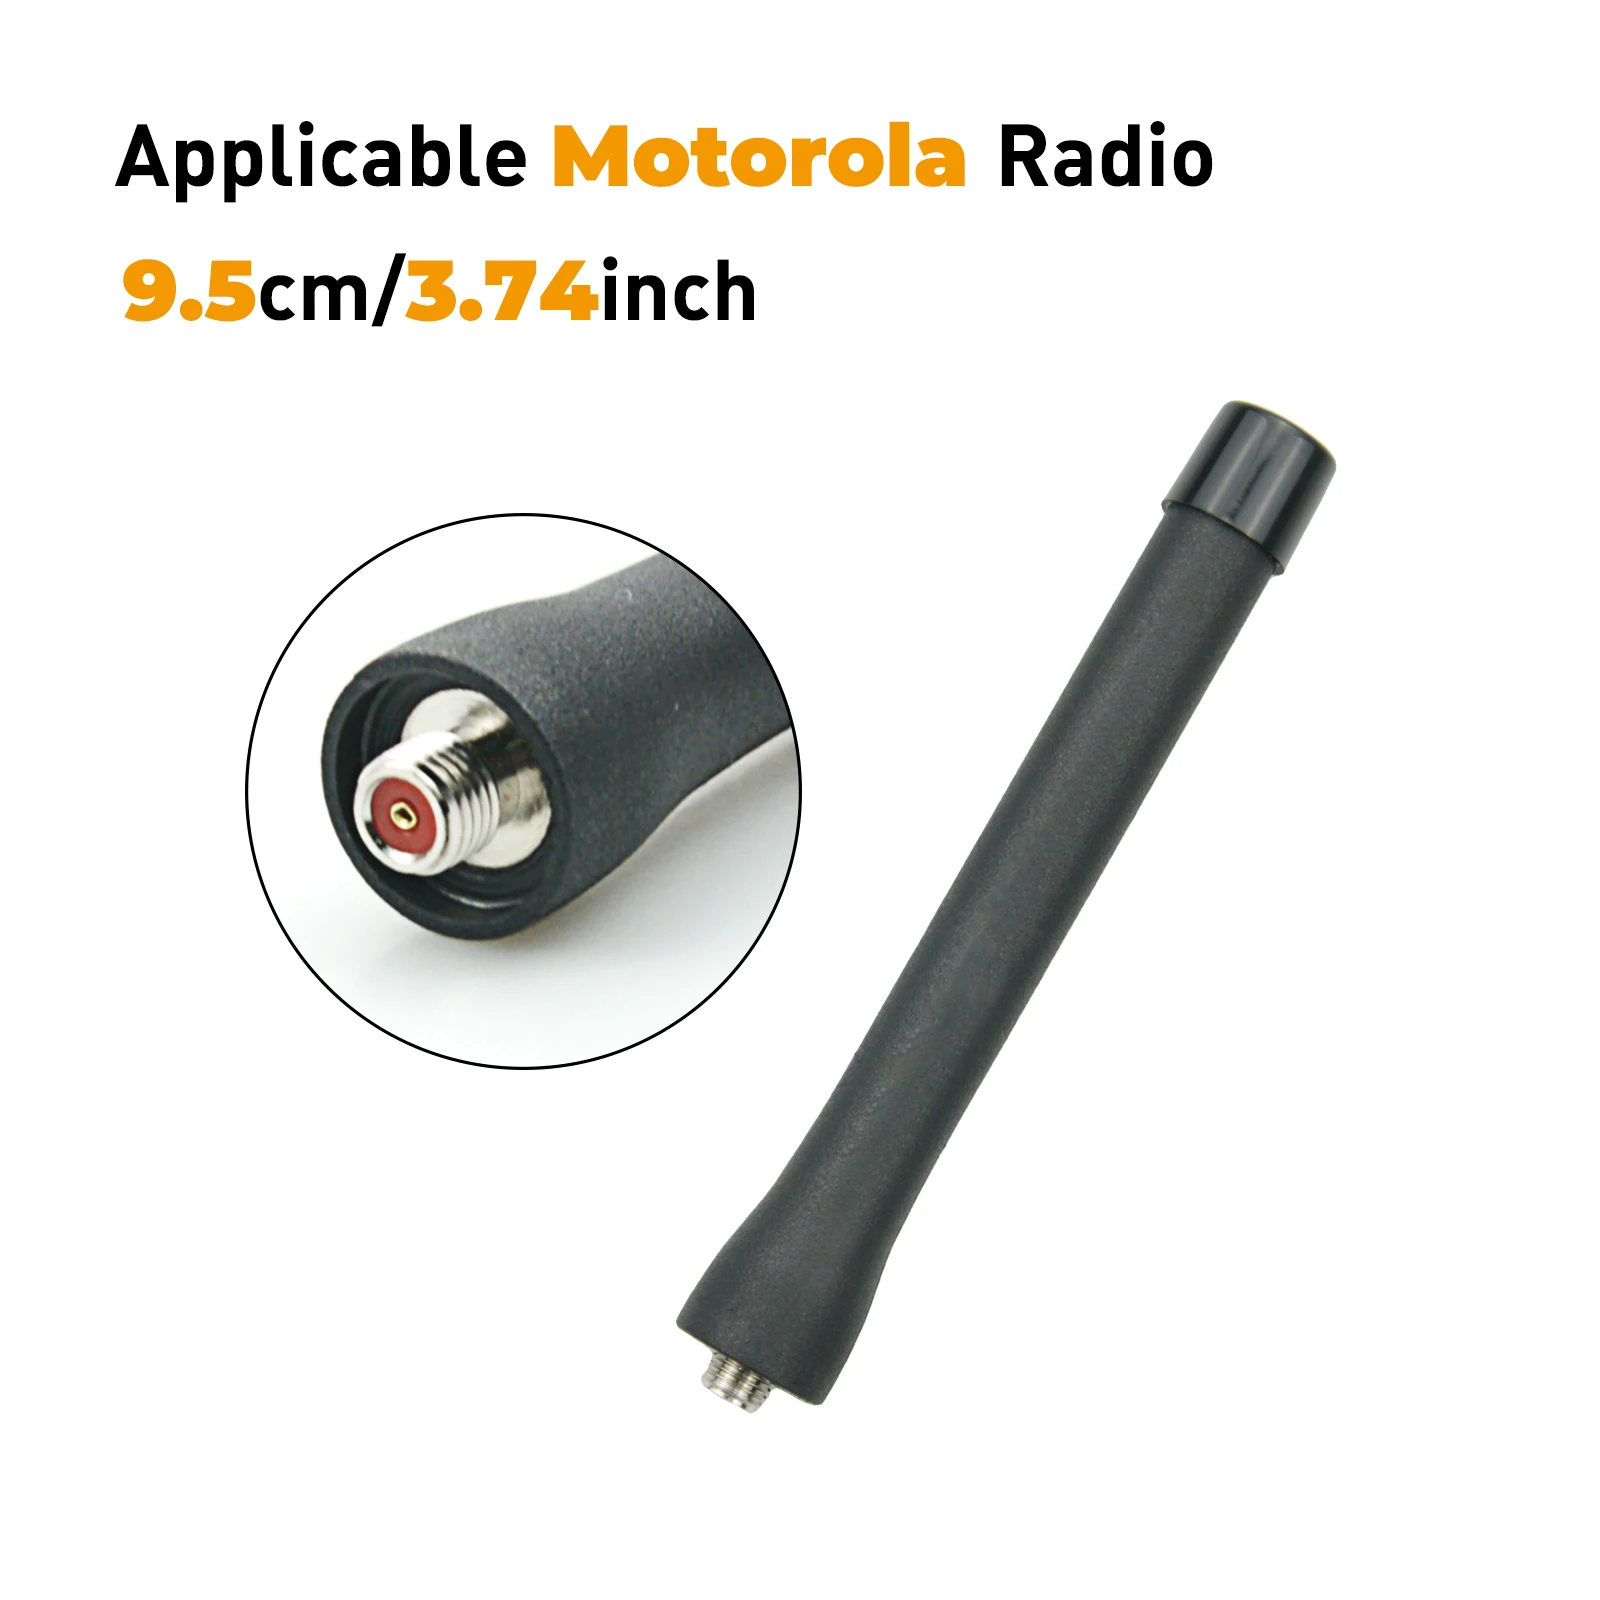 

NAE6546 400-520MHz 3.7inch UHF Antenna for Motorola XTS1500 XTS2500 XTS3000 XTS3500 XTS5000 HT1000 JT1000 MTX838 Two Way Radio